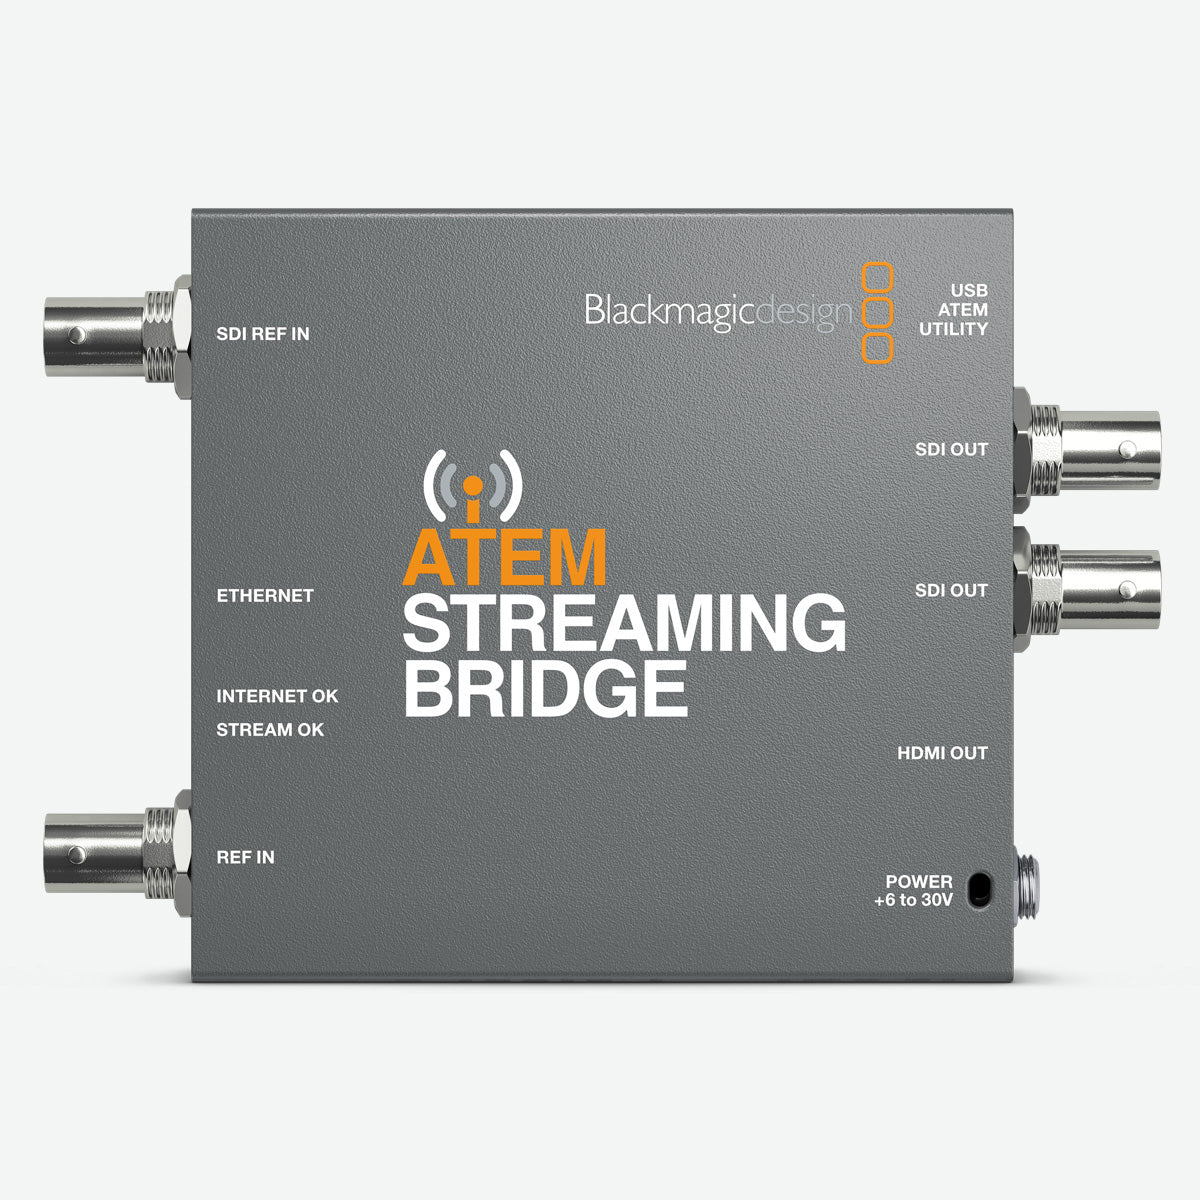 Blackmagic Design(ブラックマジックデザイン) ATEM Streaming Bridge SWATEMMINISBPR